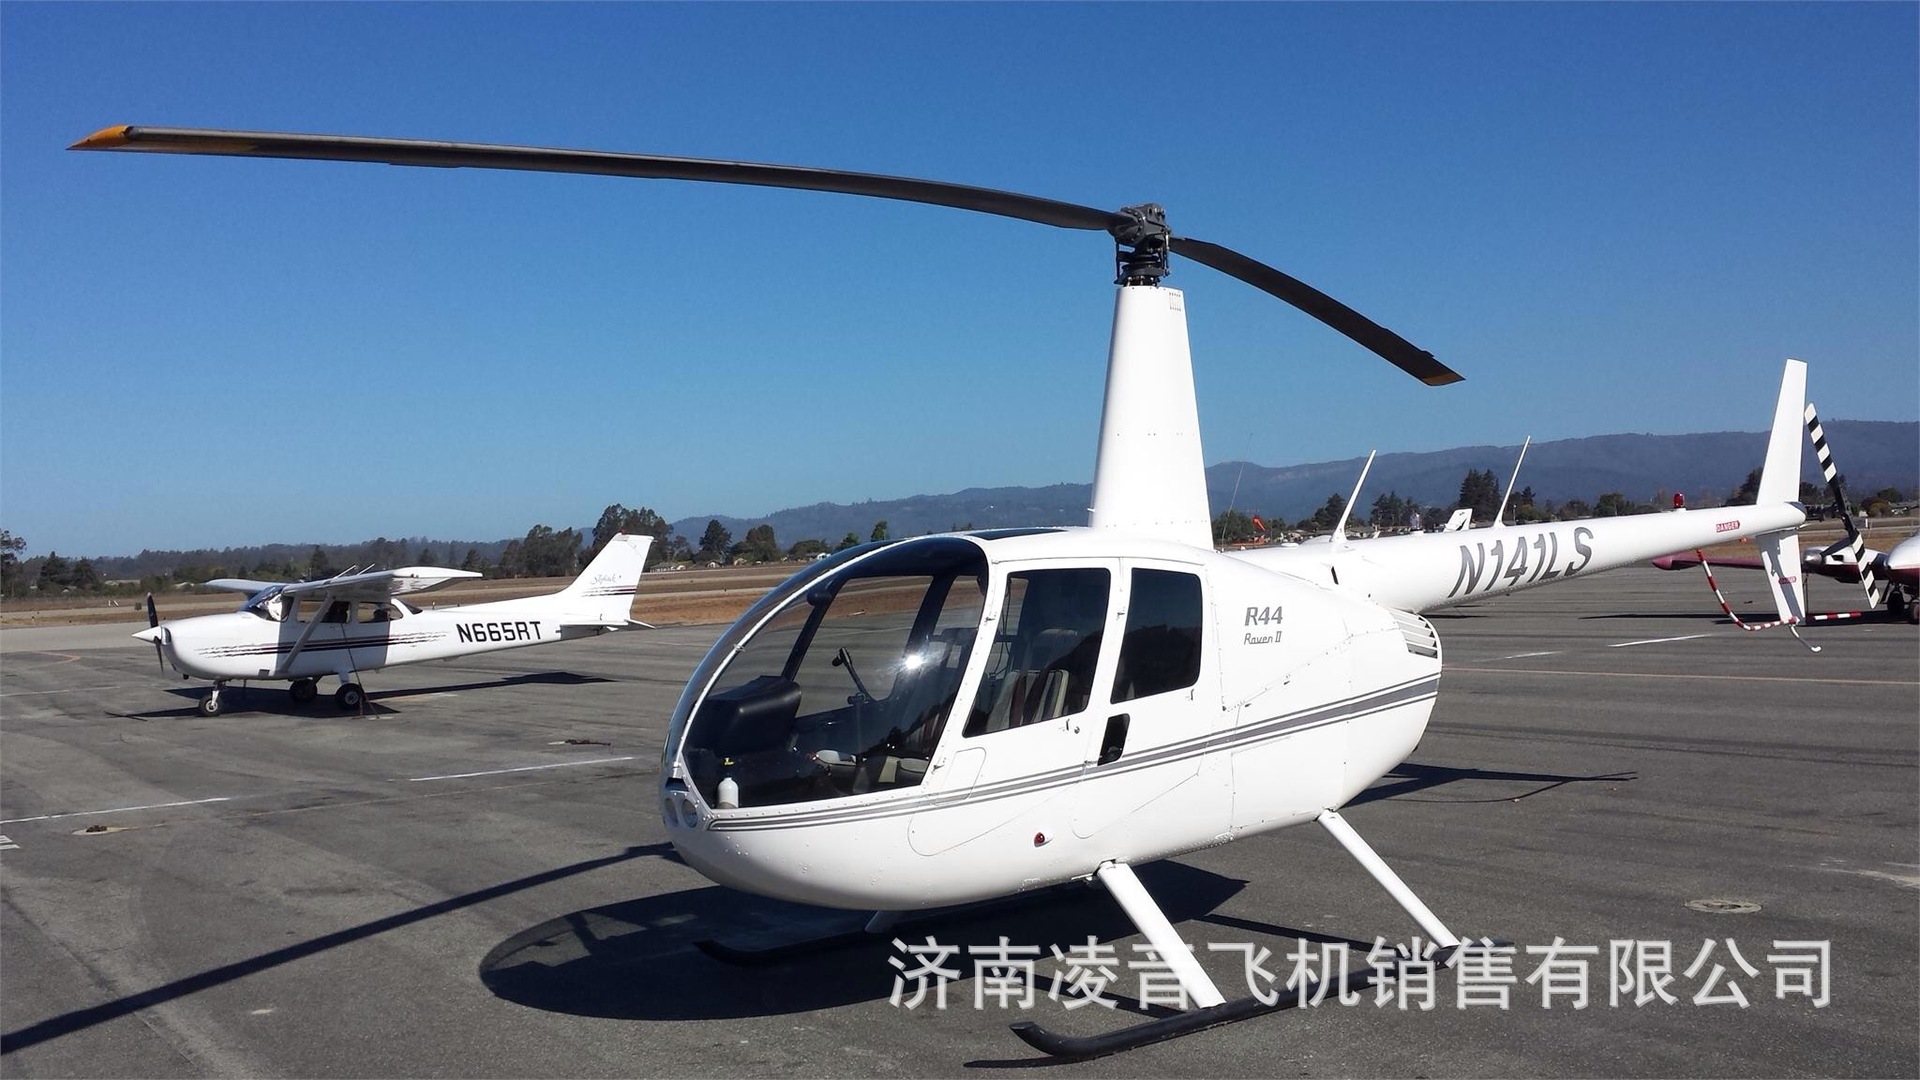 四川私人飞机 罗宾逊r44直升机 四川直升飞机通用航空运营中心